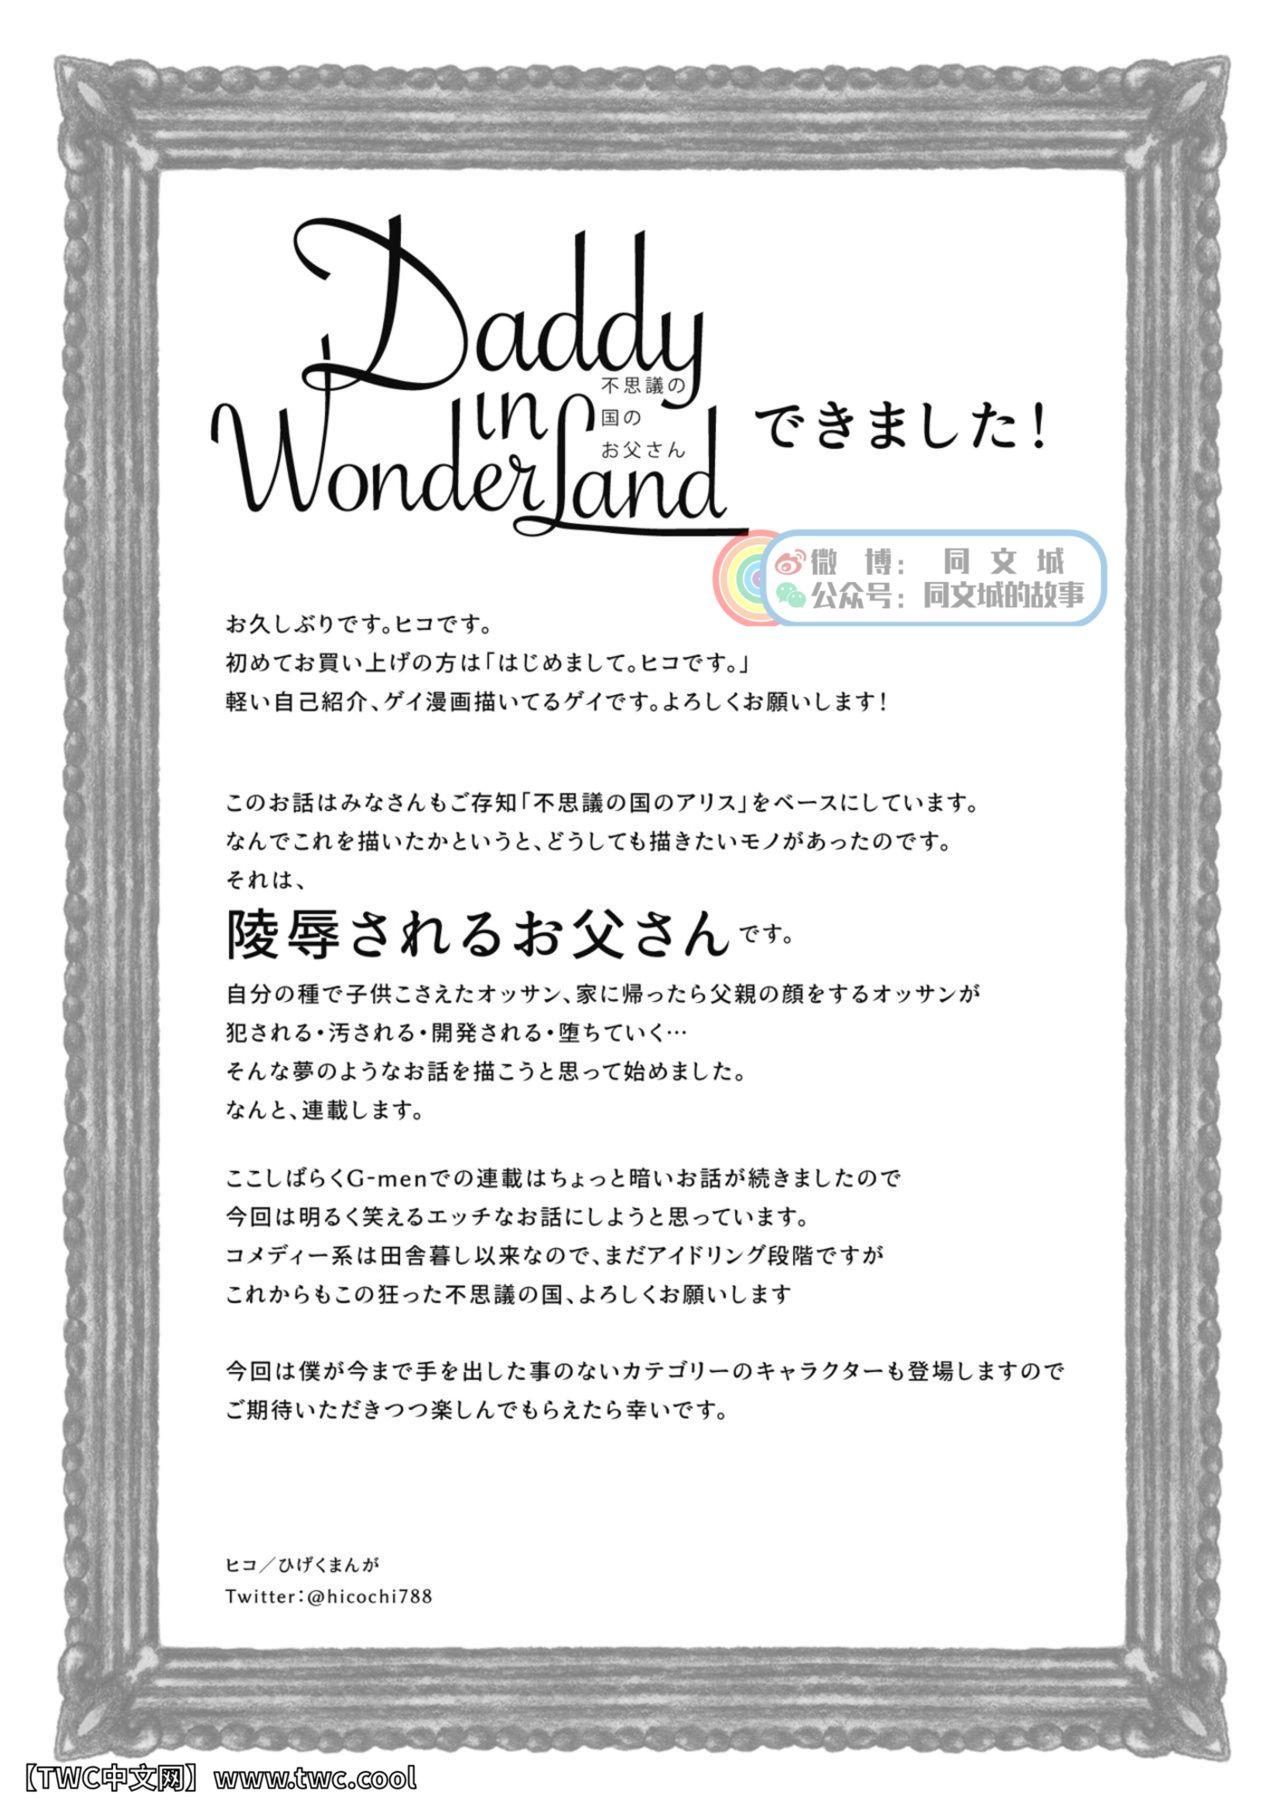 Daddy in Wonderland 1 38